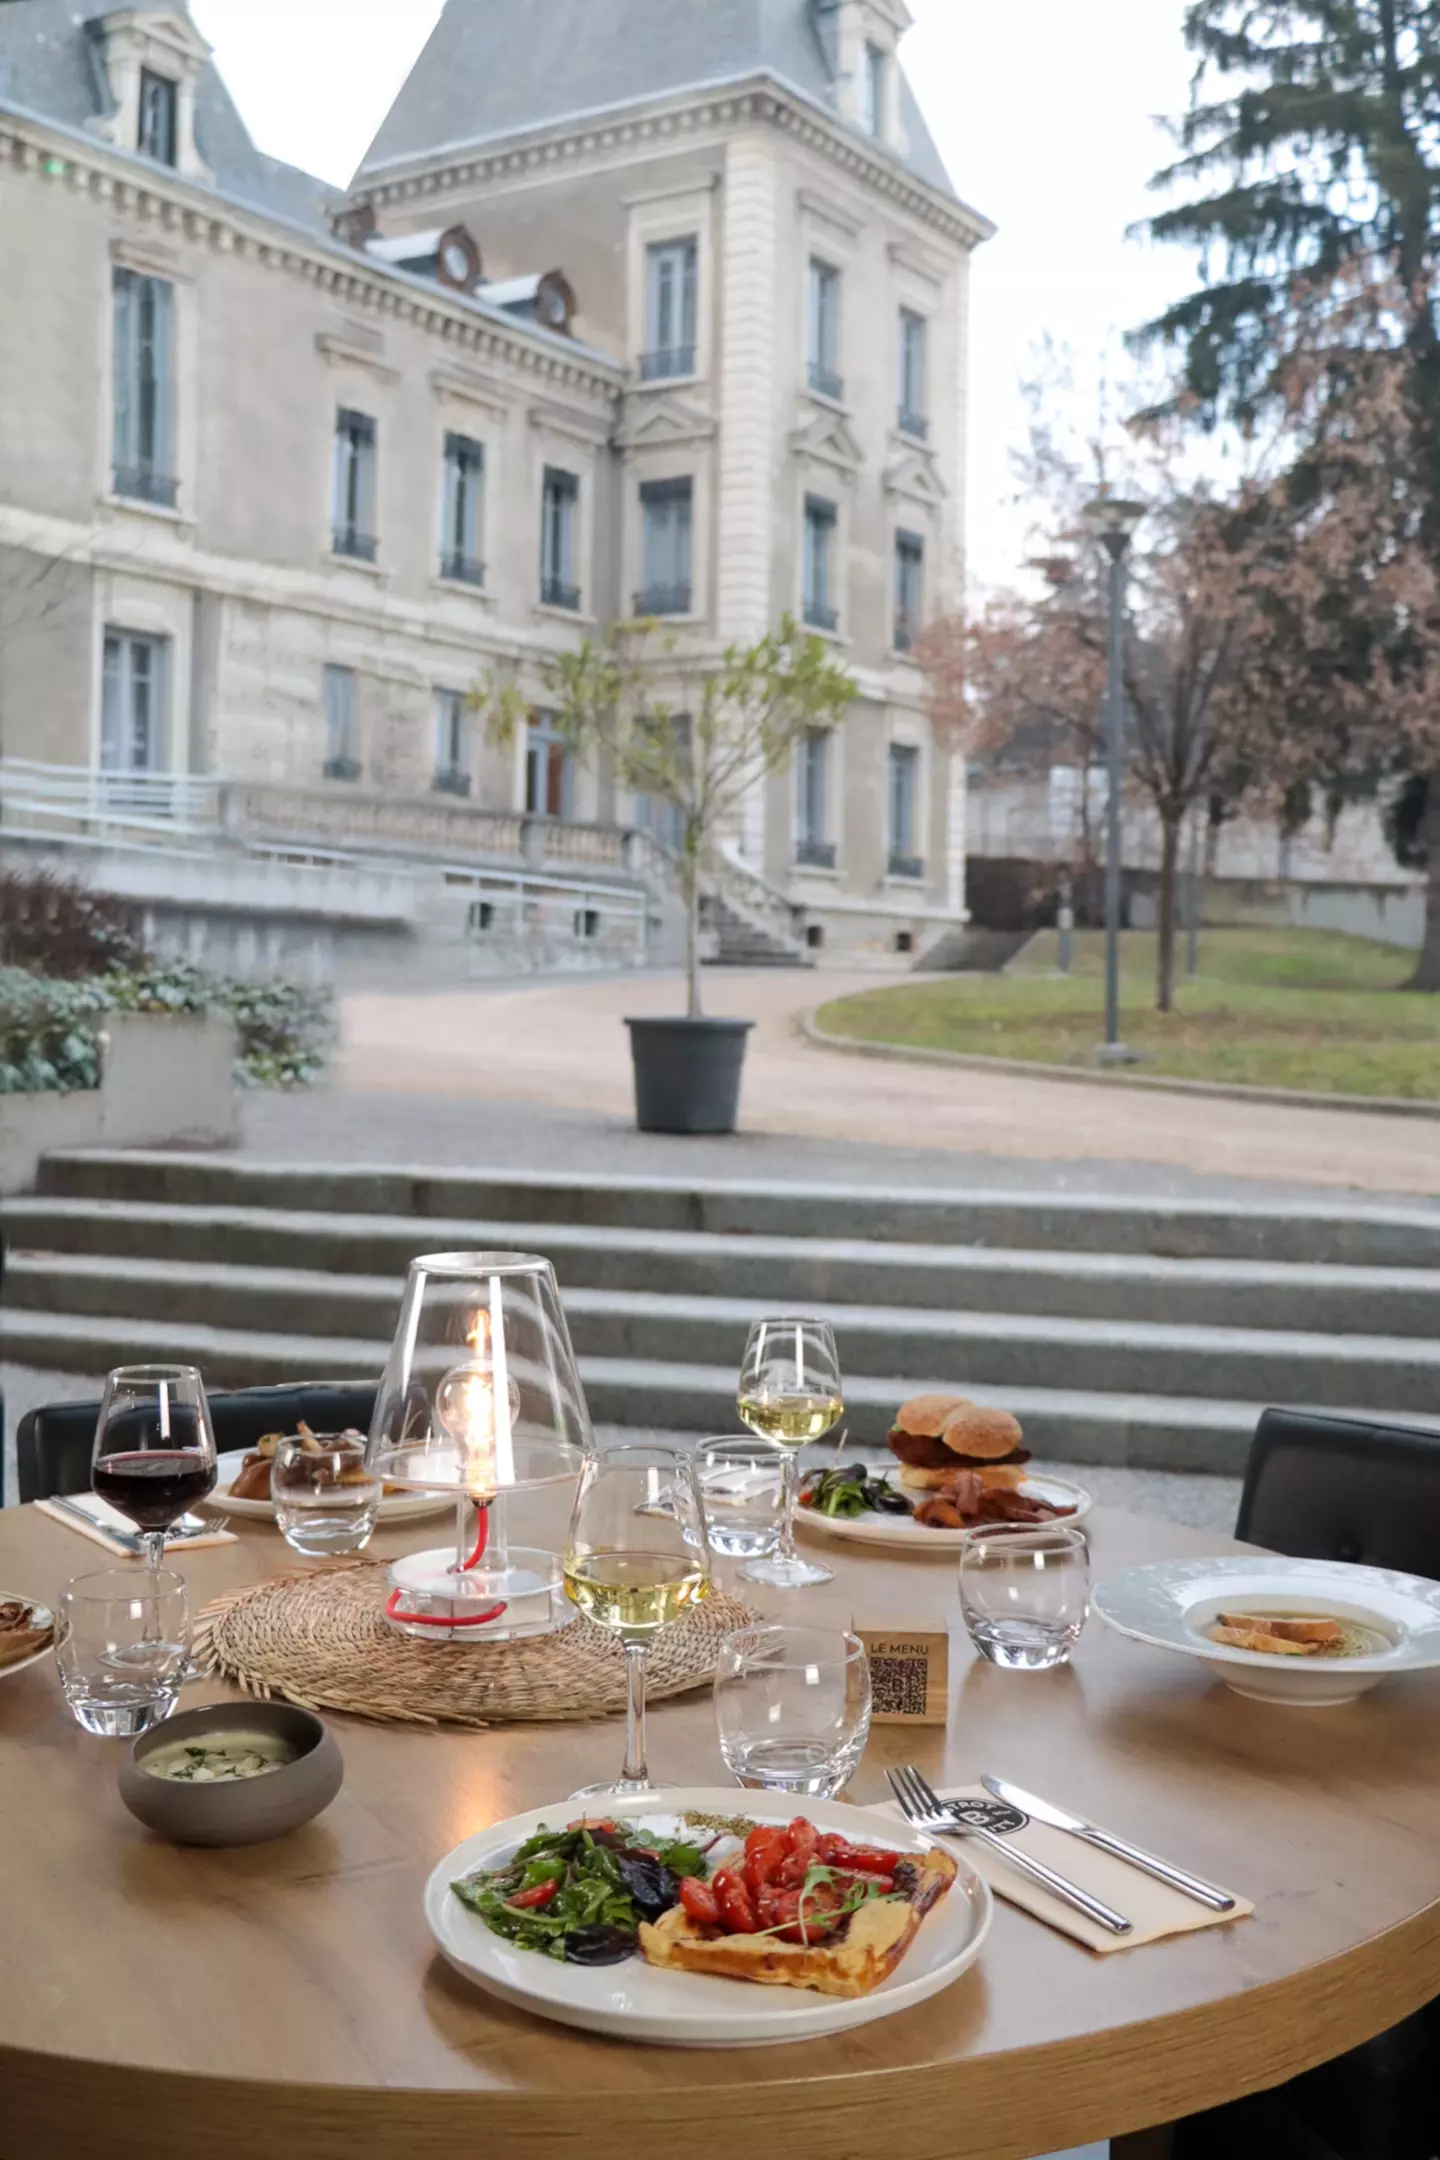 Vista de una mesa en la terraza del Bistrot City en la Cité Internationale de Lyon, preparada con platos de comida gourmet, copas de vino tinto y blanco, una linterna encendida, con un gran edificio clásico al fondo.